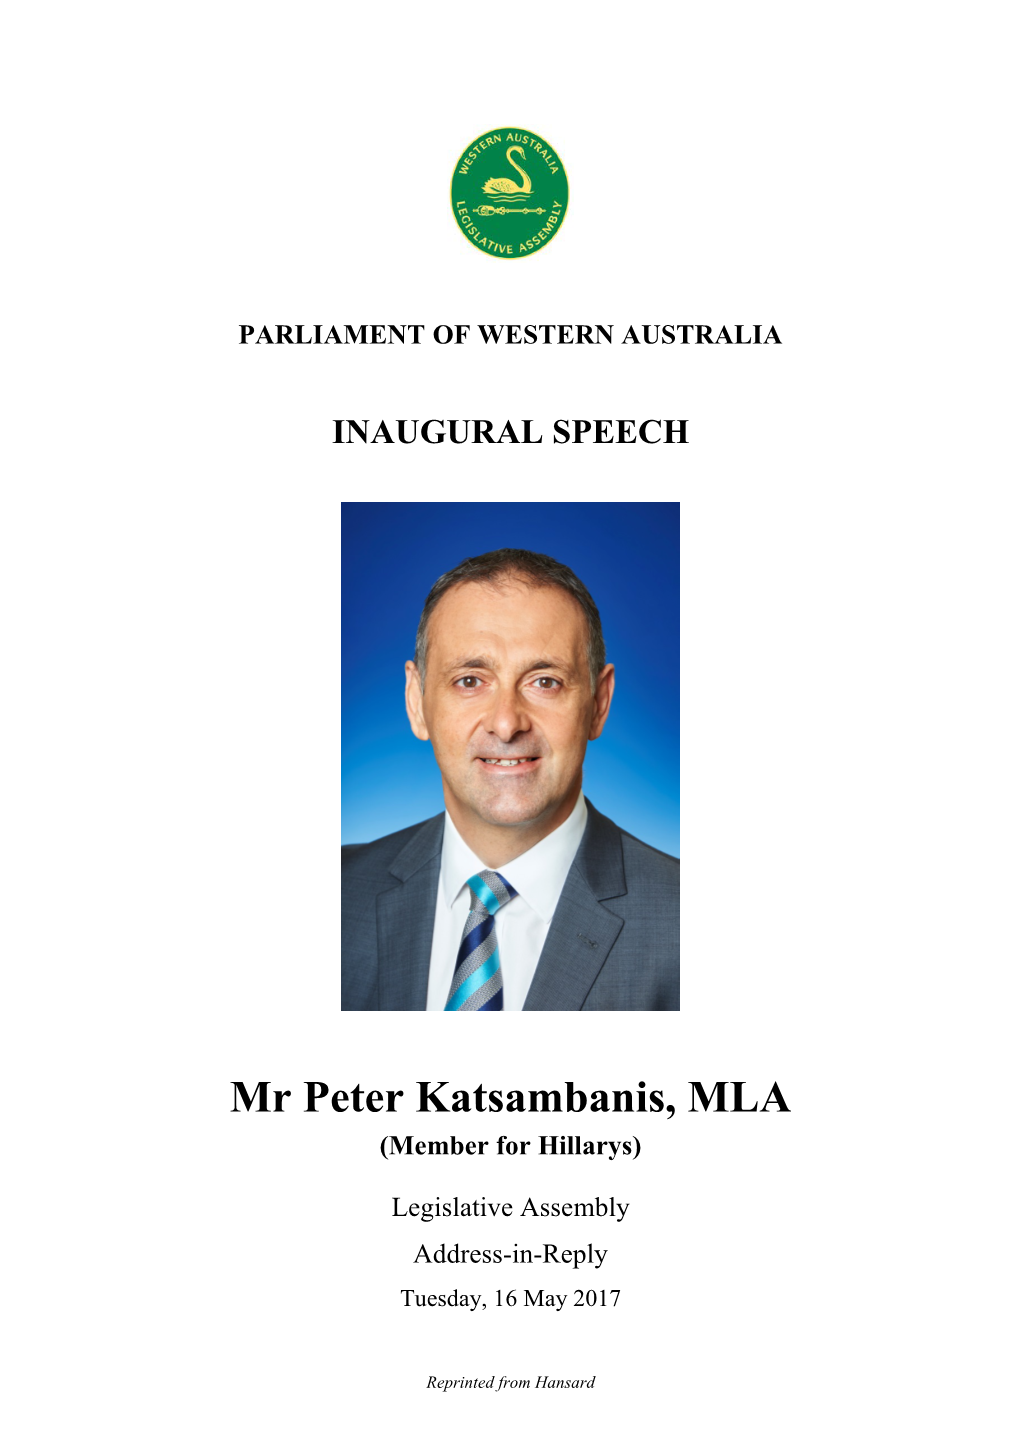 Mr Peter Katsambanis, MLA (Member for Hillarys)